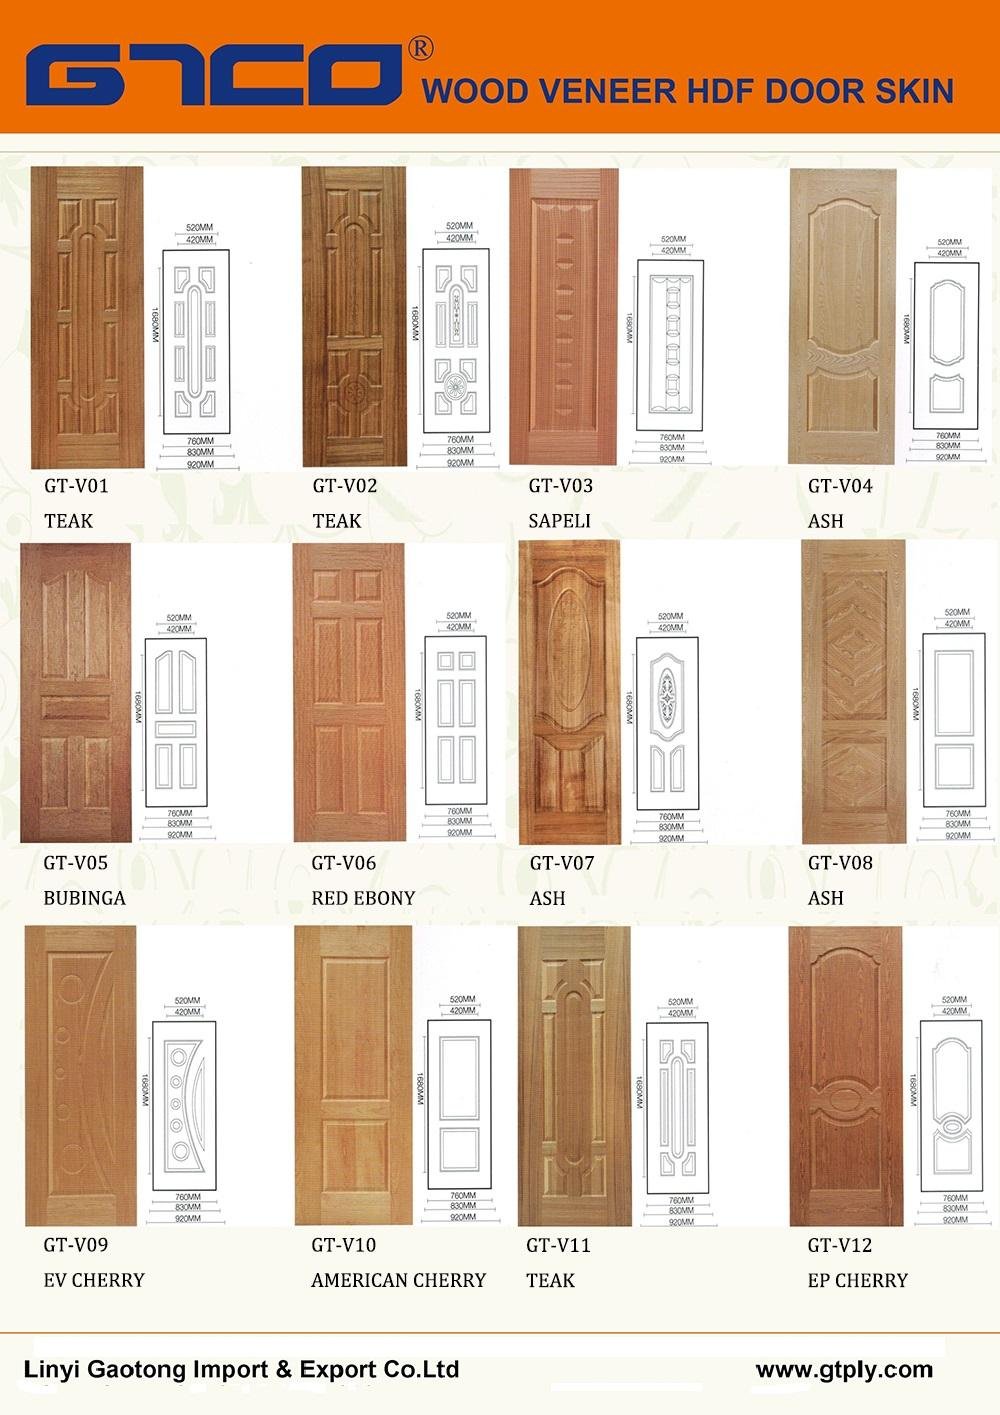 Nature Wood Veneer HDF Door Skin Catalogue